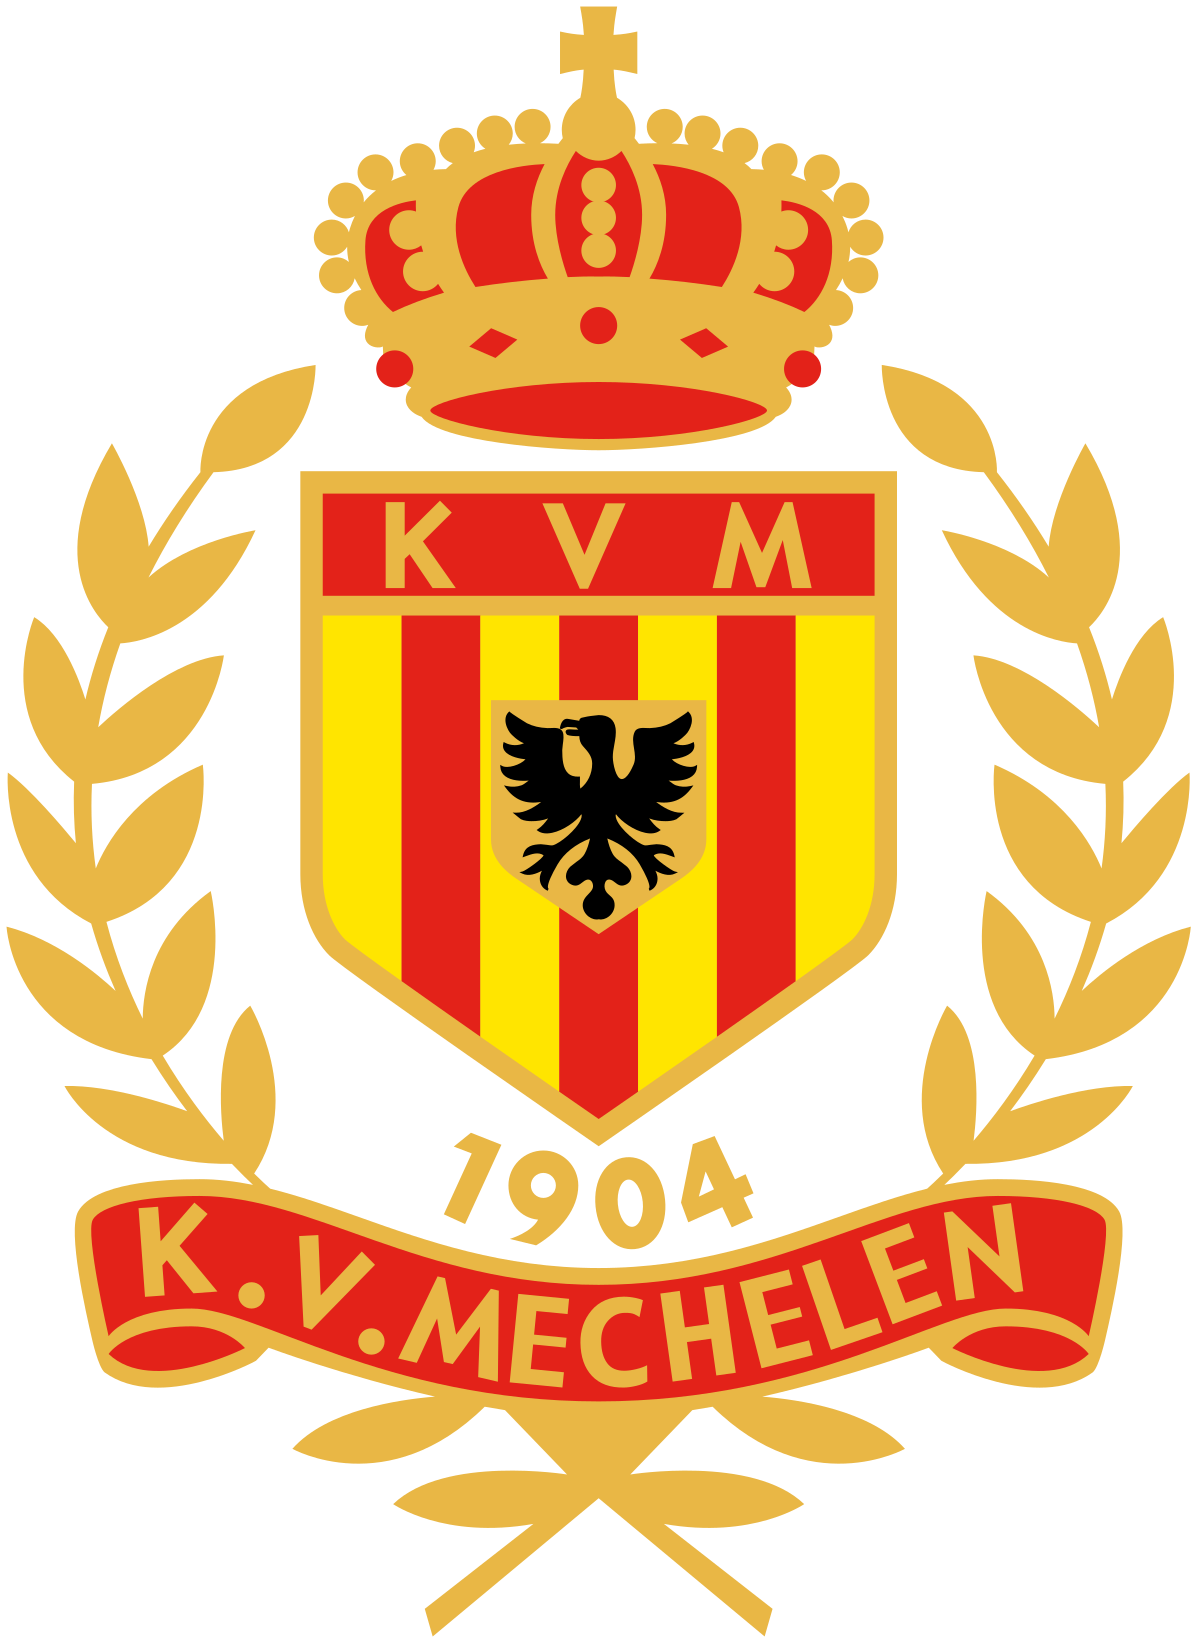 K.V Mechelen